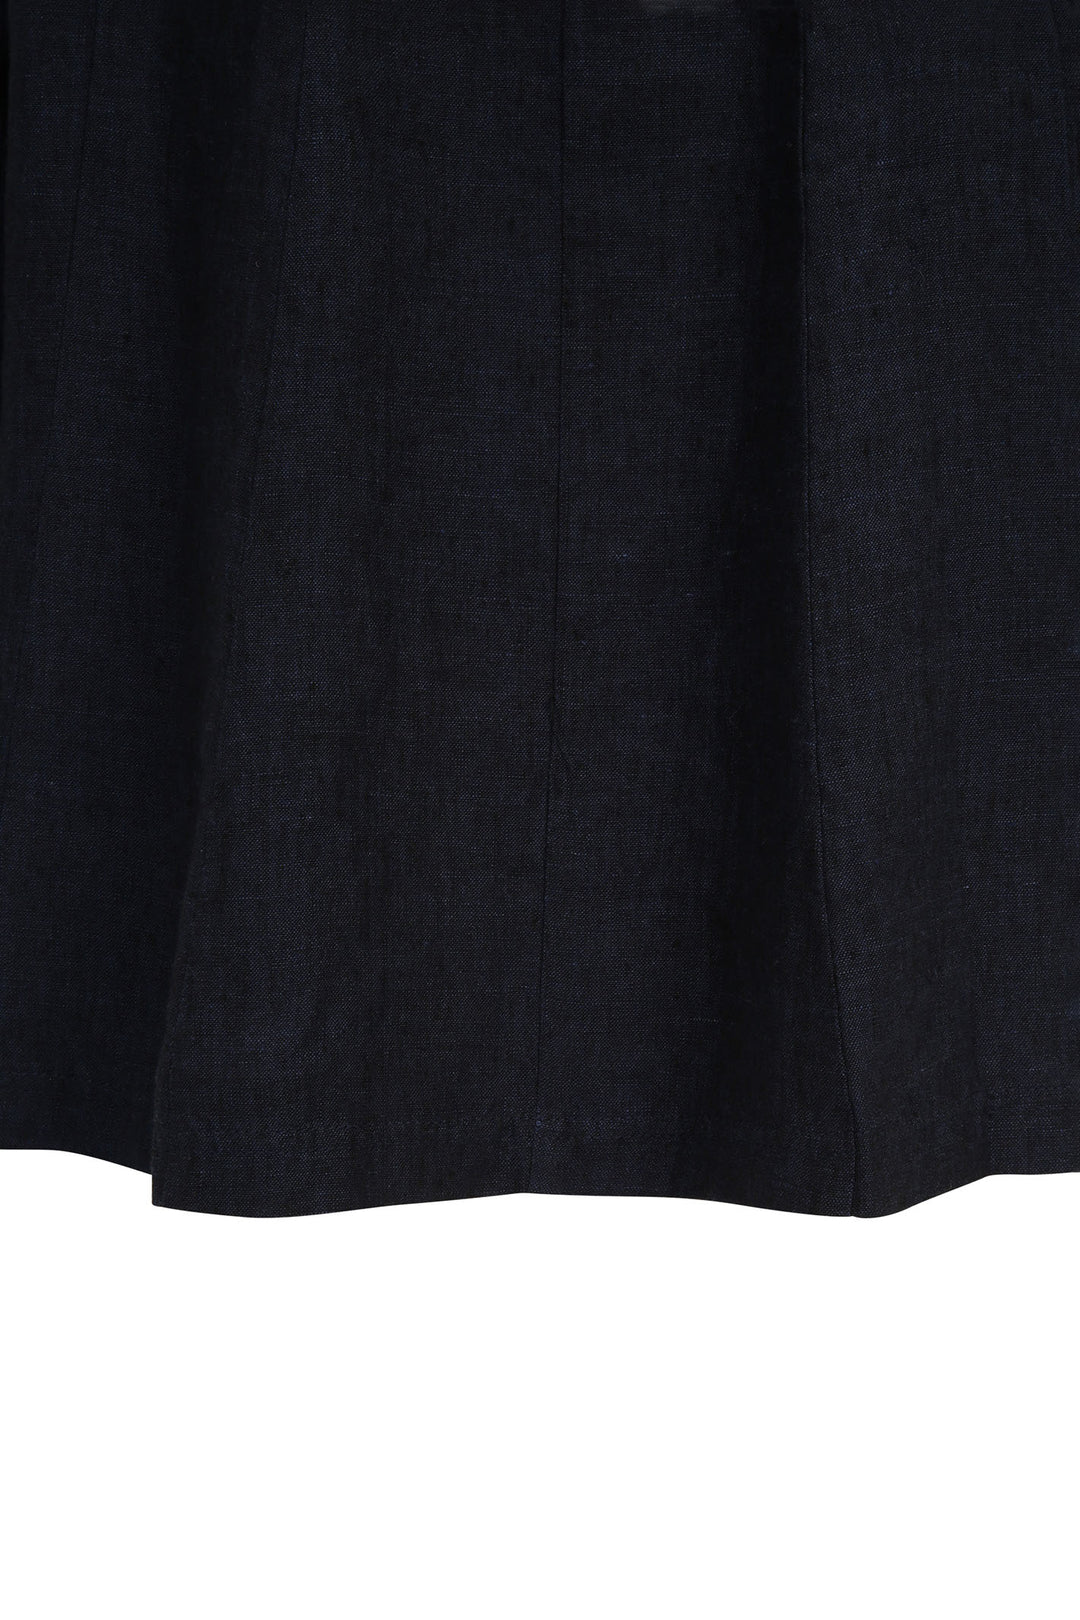 Doris Streich 319135 50 Navy Linen Zip Front Jacket - Shirley Allum Boutique